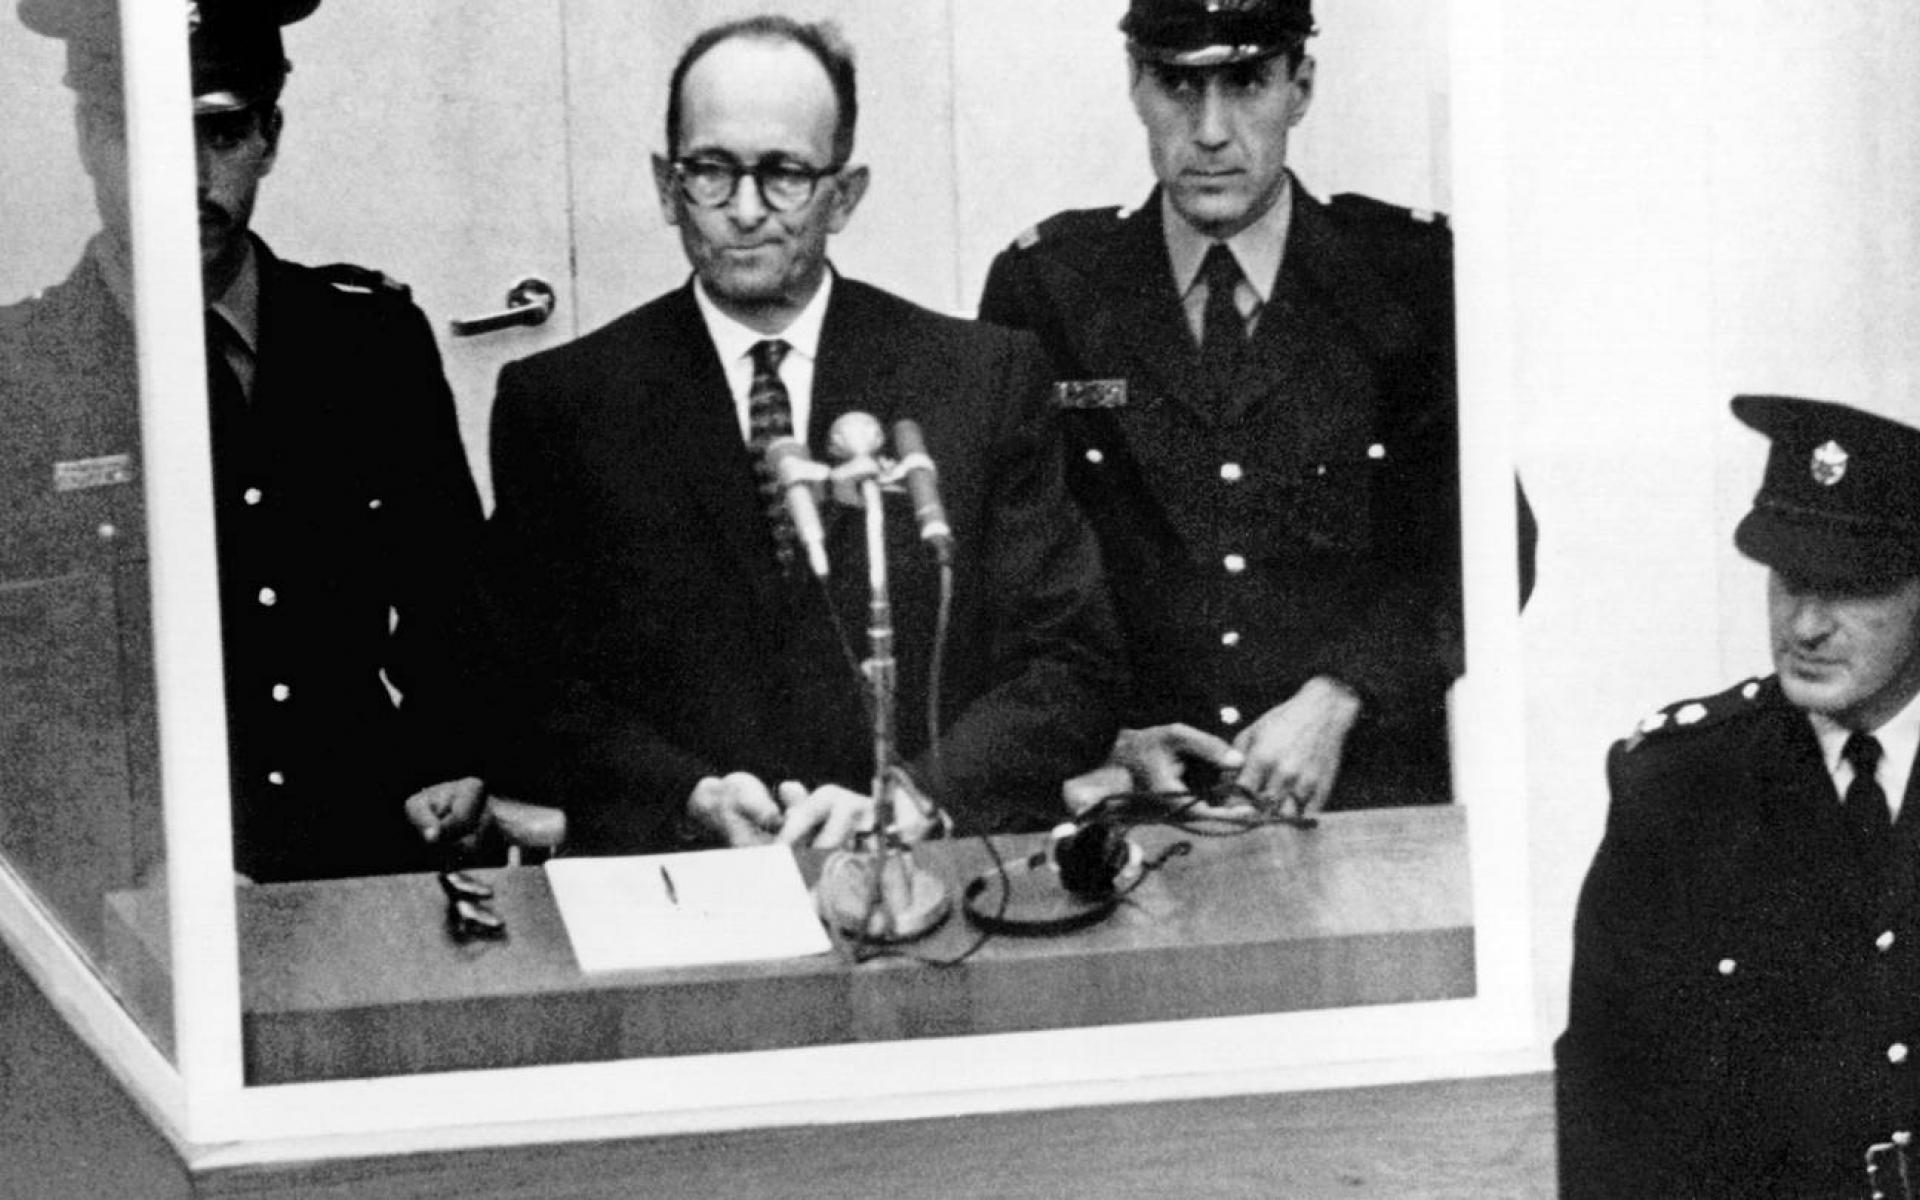 Bild zeigt Bild aus dem Gerichtsaal Eichmann mitte umringt von Justizbeamten in Uniform